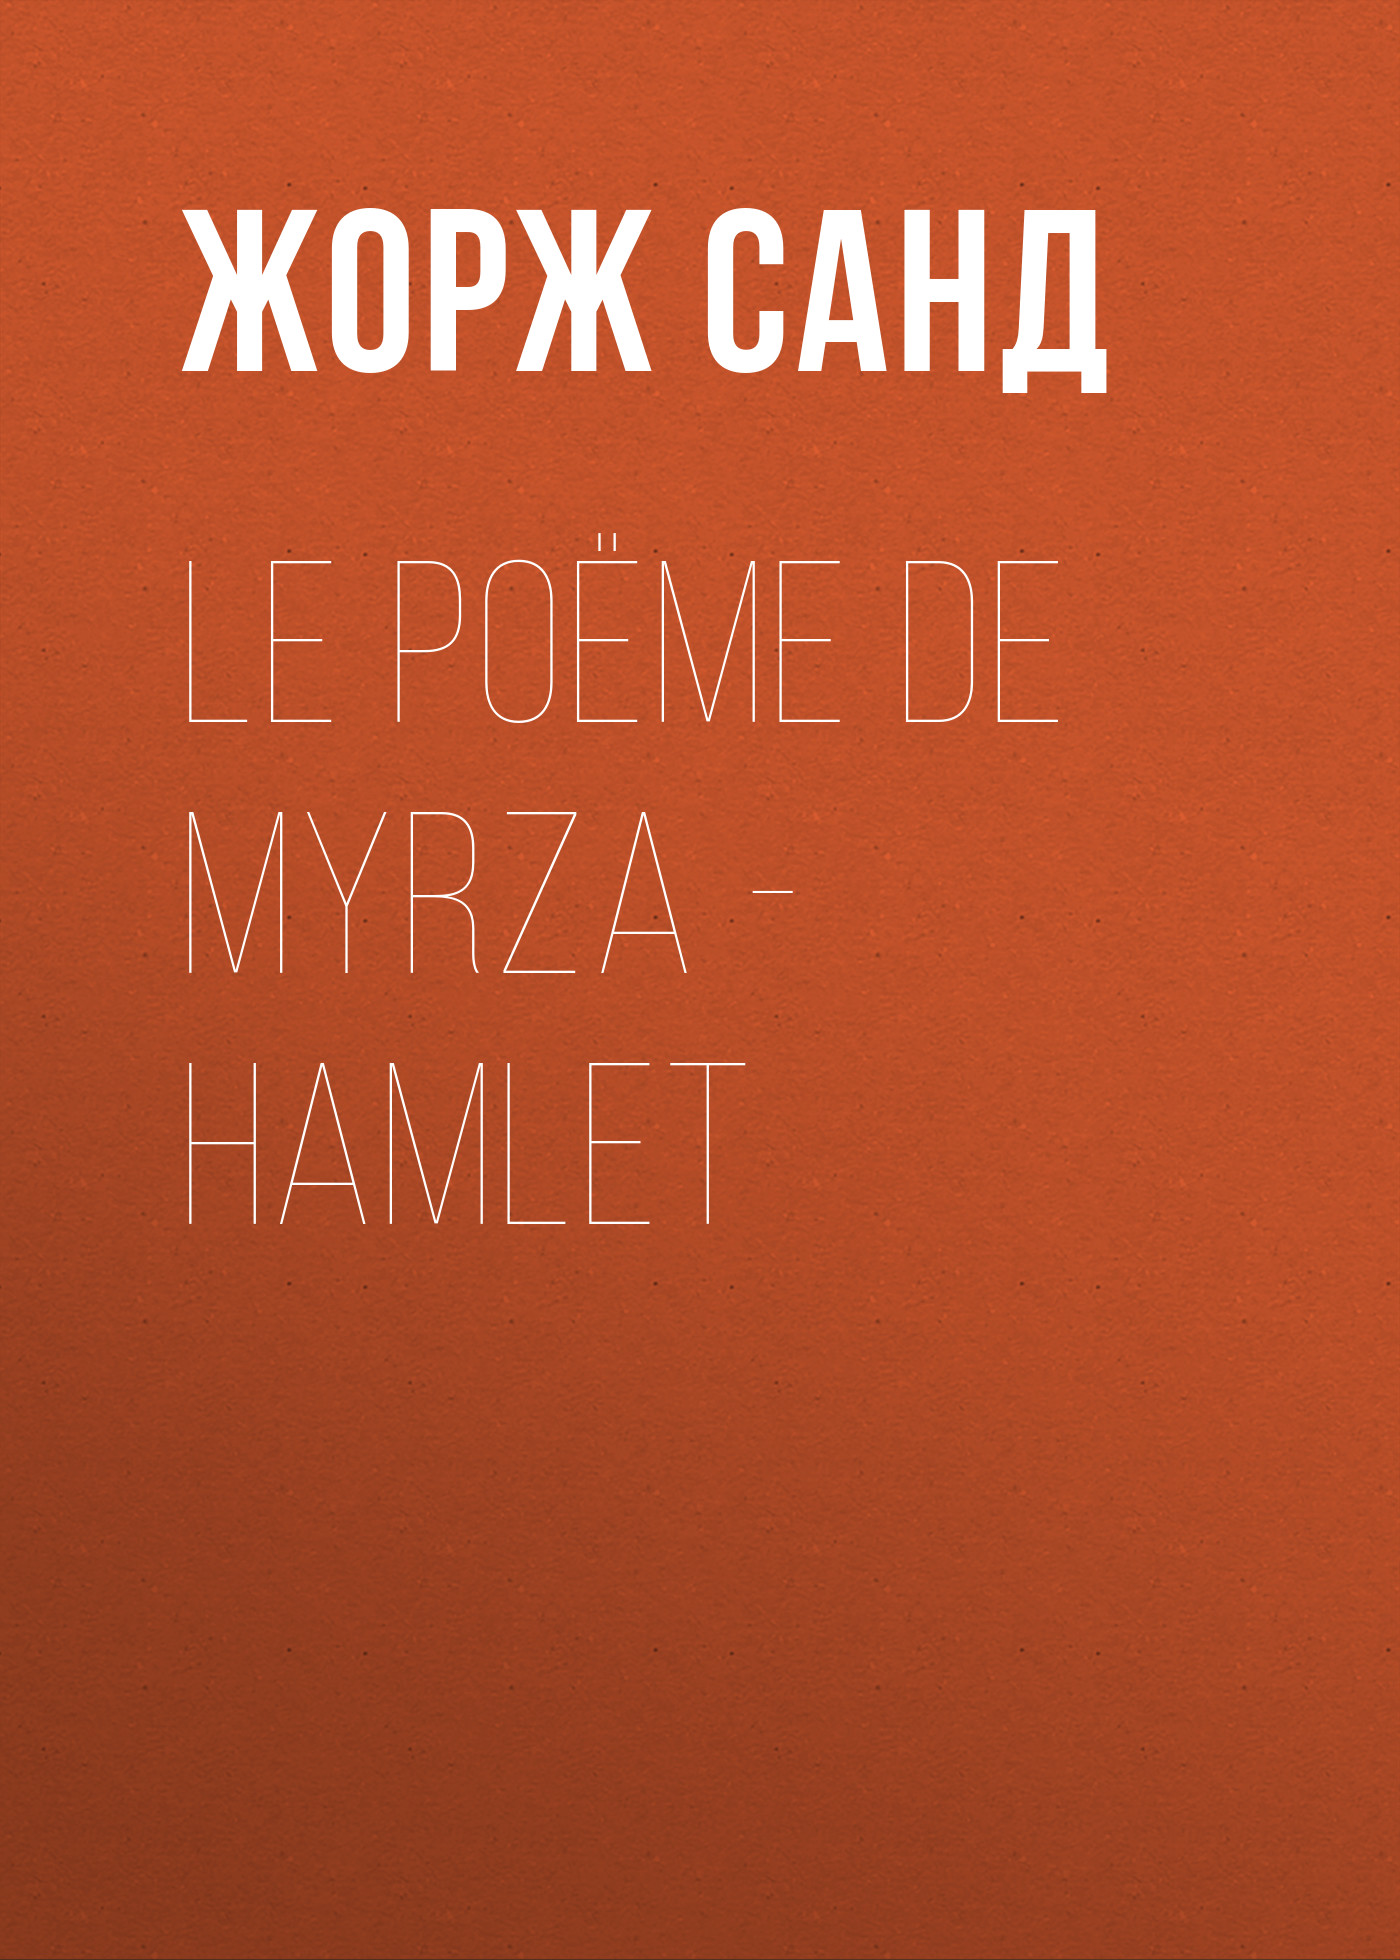 Книга Le poëme de Myrza – Hamlet из серии , созданная Жорж Санд, может относится к жанру Литература 19 века, Зарубежная старинная литература, Зарубежная классика. Стоимость электронной книги Le poëme de Myrza – Hamlet с идентификатором 25450828 составляет 0 руб.